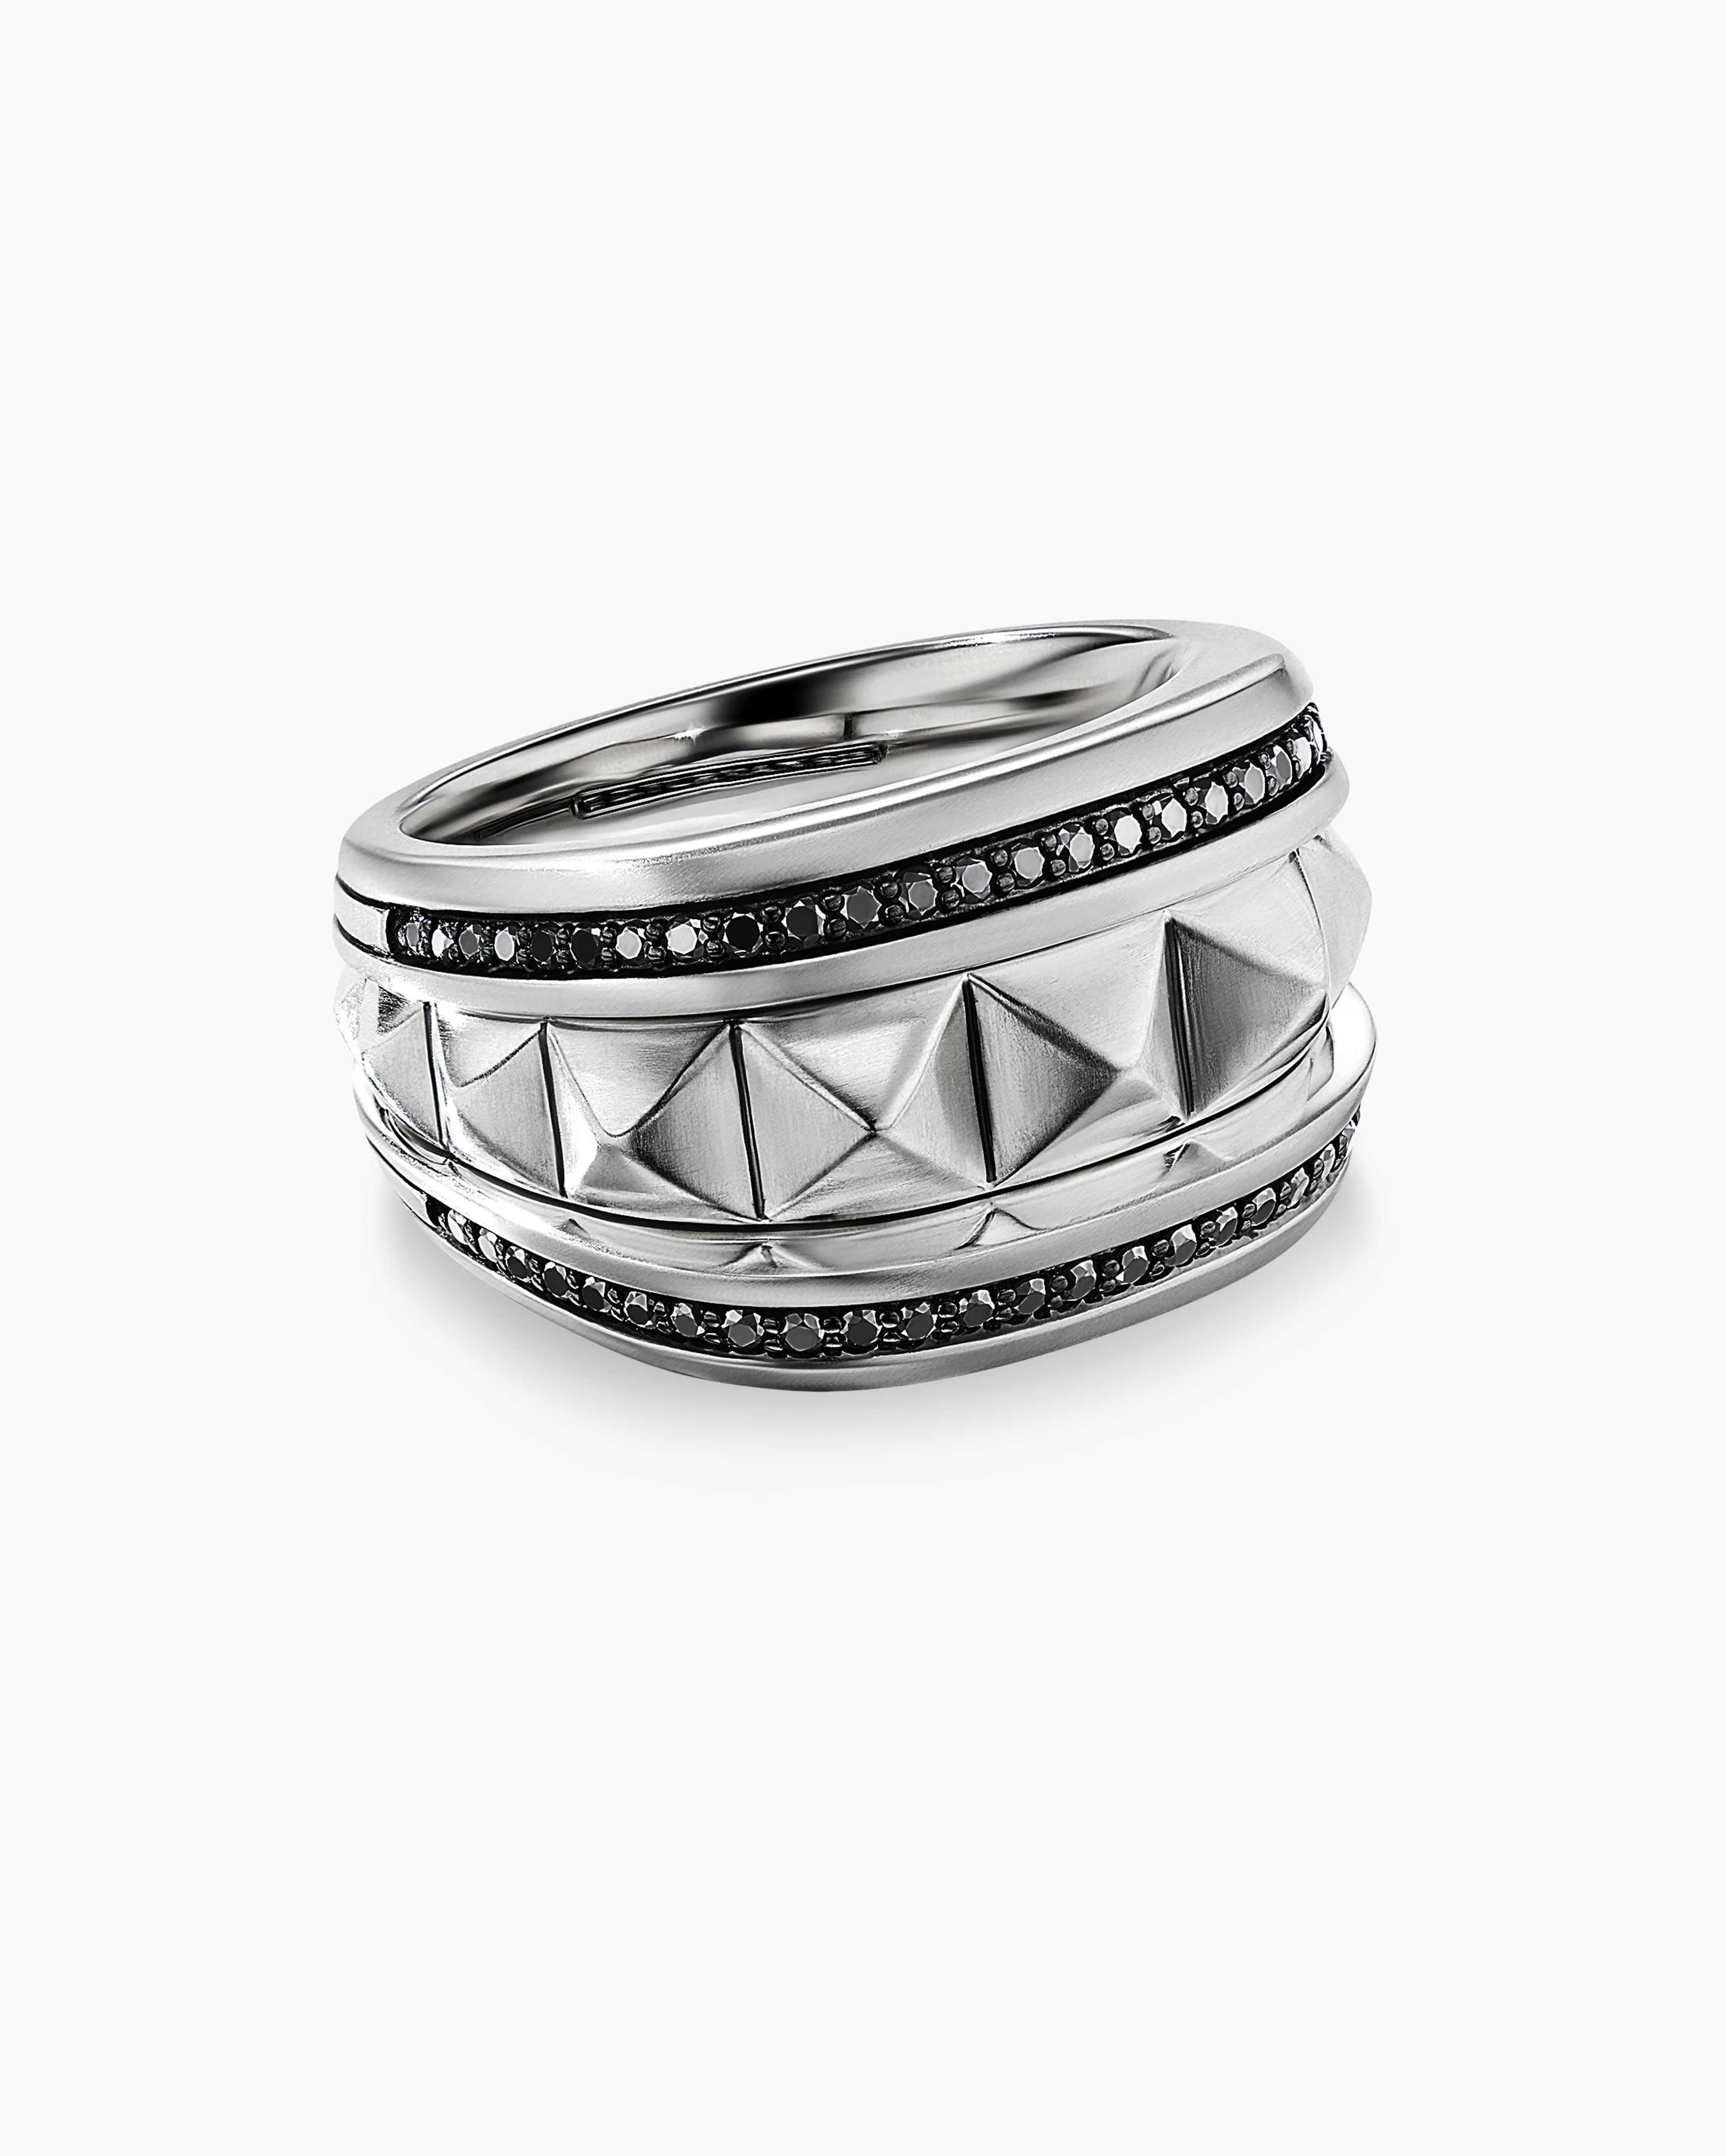 Buy Mens Handmade Ring, Black Onyx Gemstone Ring, Men Sterling Silver Ring,  925k Silver Men Jewelry, Men Vintage Ring, Gift for Husband Online in India  - Etsy | Rings for men, Sterling